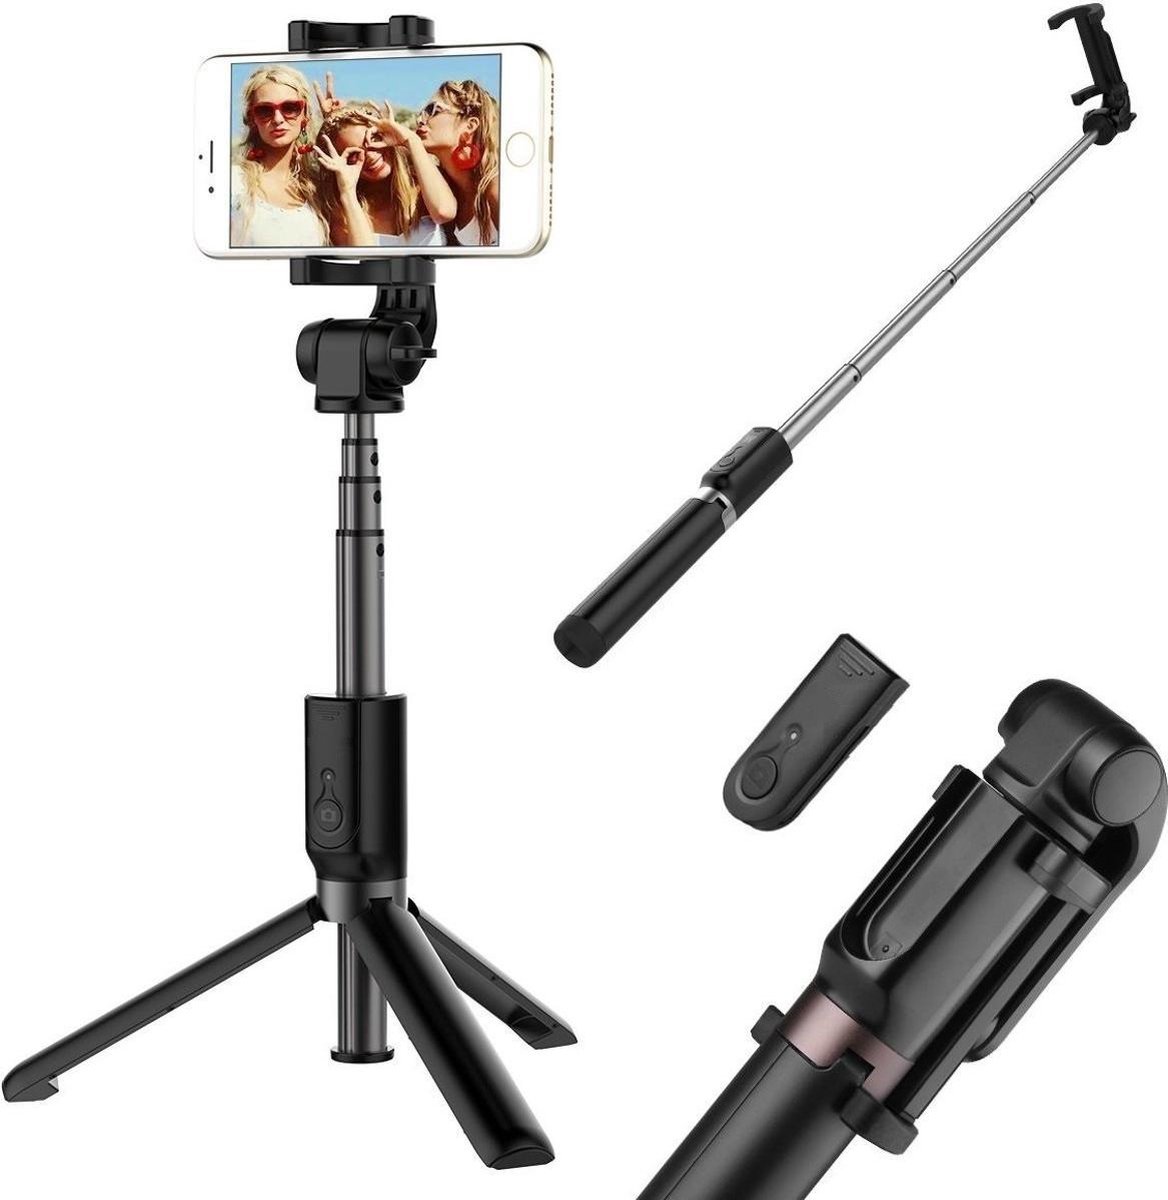 Ntech 3 in 1 Selfie Stick met Afstandsbediening en Foldable Tripod Stand Samsung Galaxy S10/S10+/S10e A50/A70/A70s/A40/A30/A7(2018) - Zwart